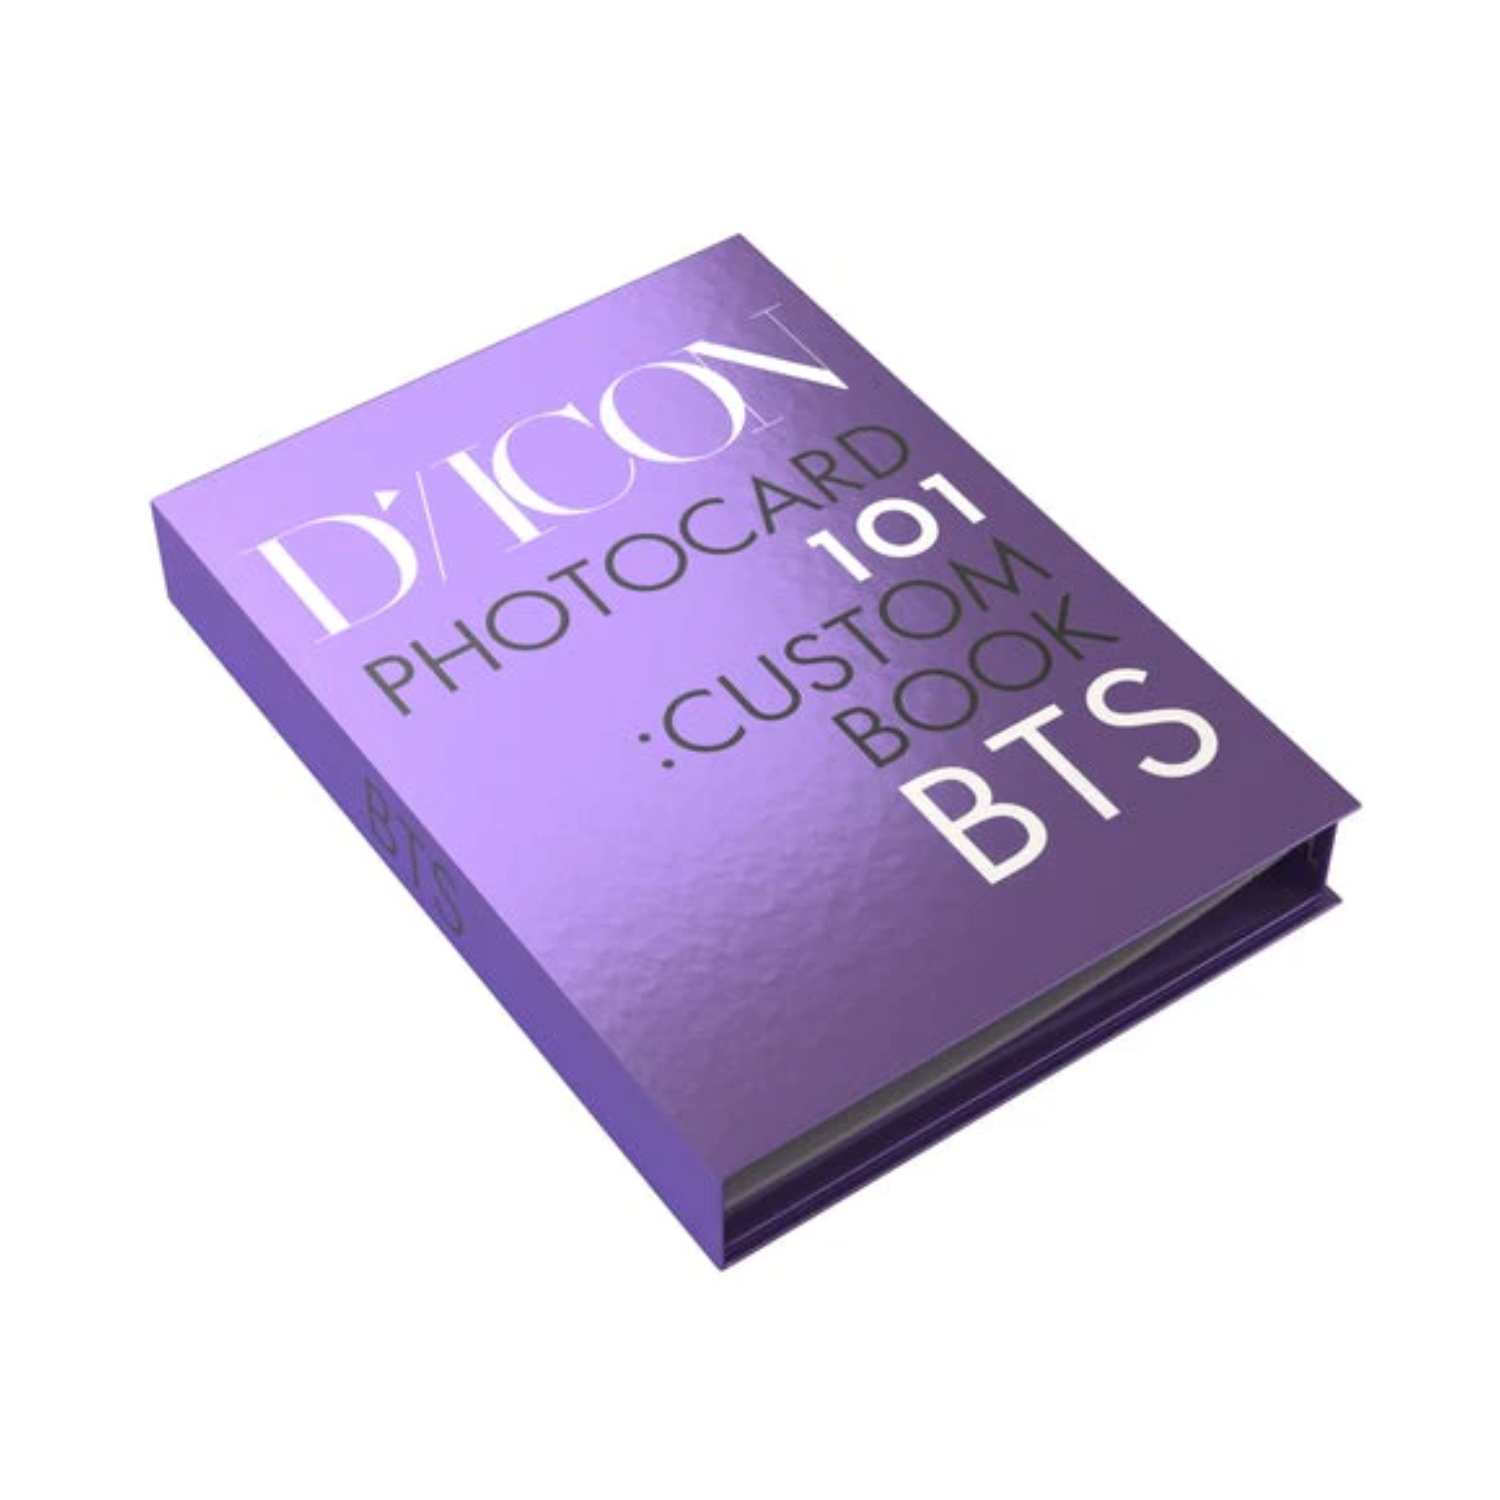 BTS DICON PHOTOCARD 101 : CUSTOM BOOK